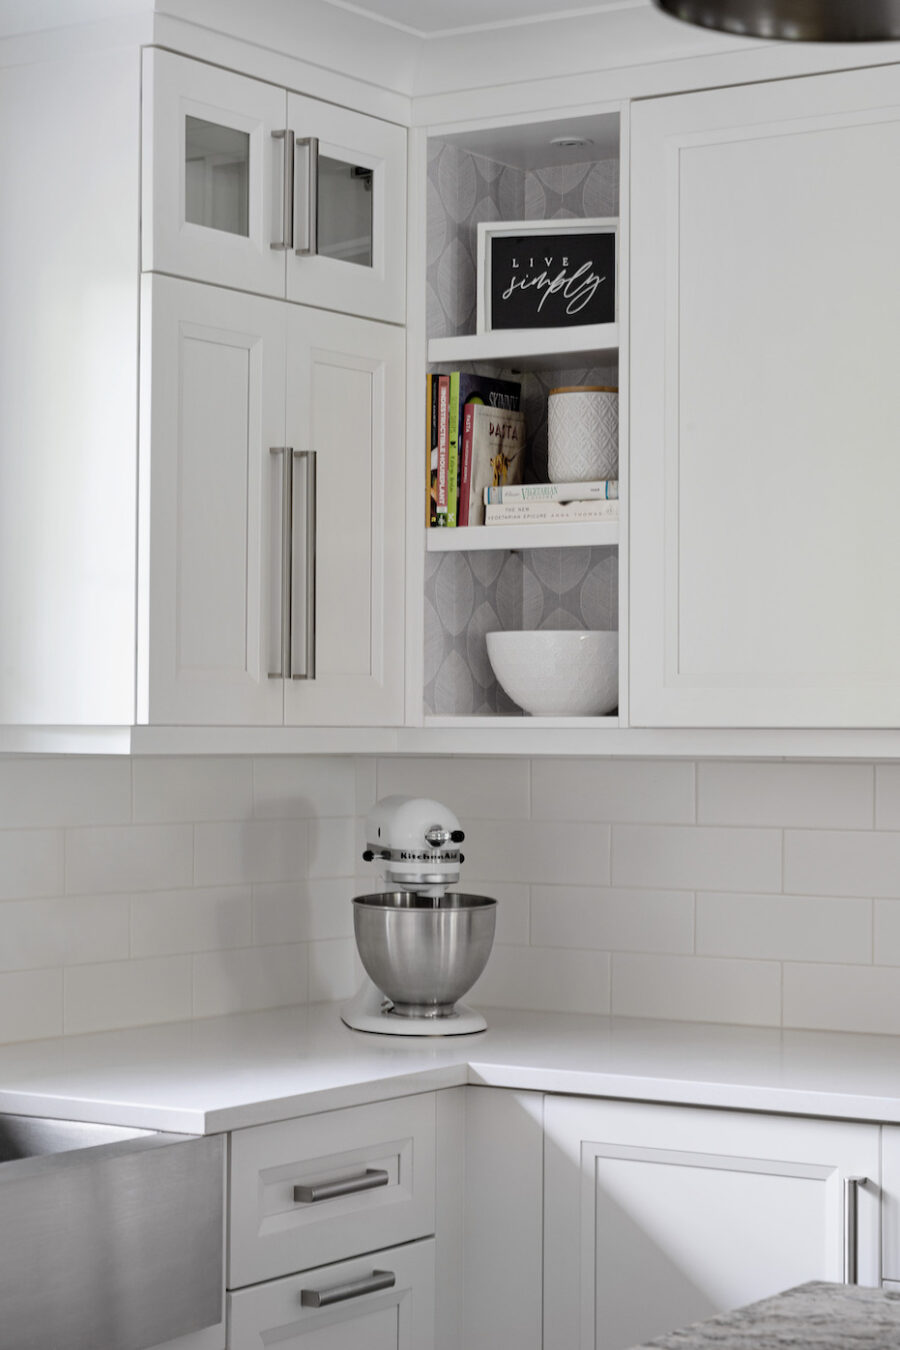 kitchenaid-mixer-white-kitchen-design